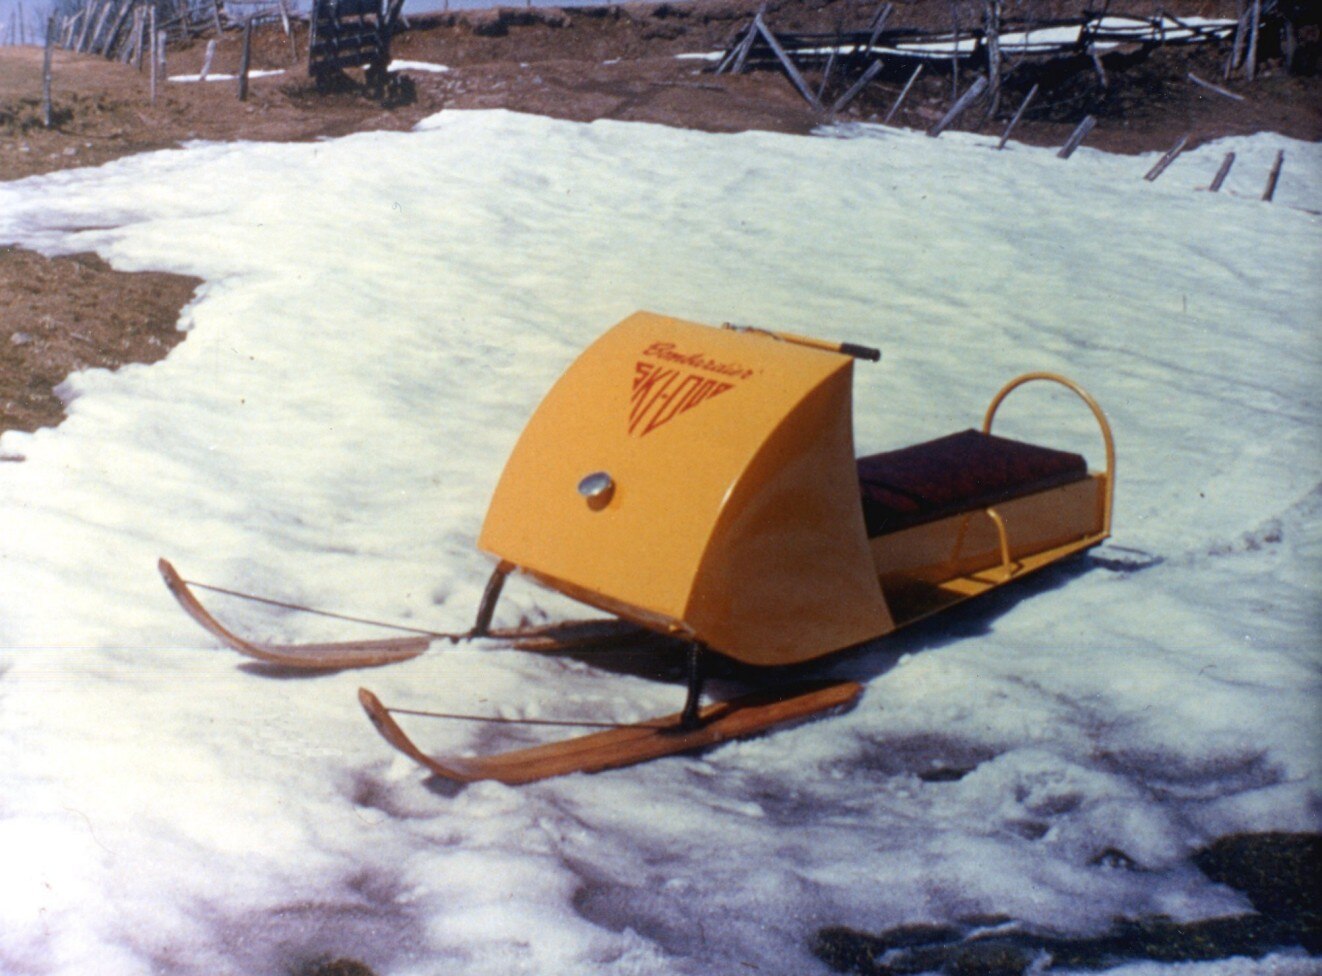  1959 Makina e parë me motor me borë Ski-Doo Ski-Dog